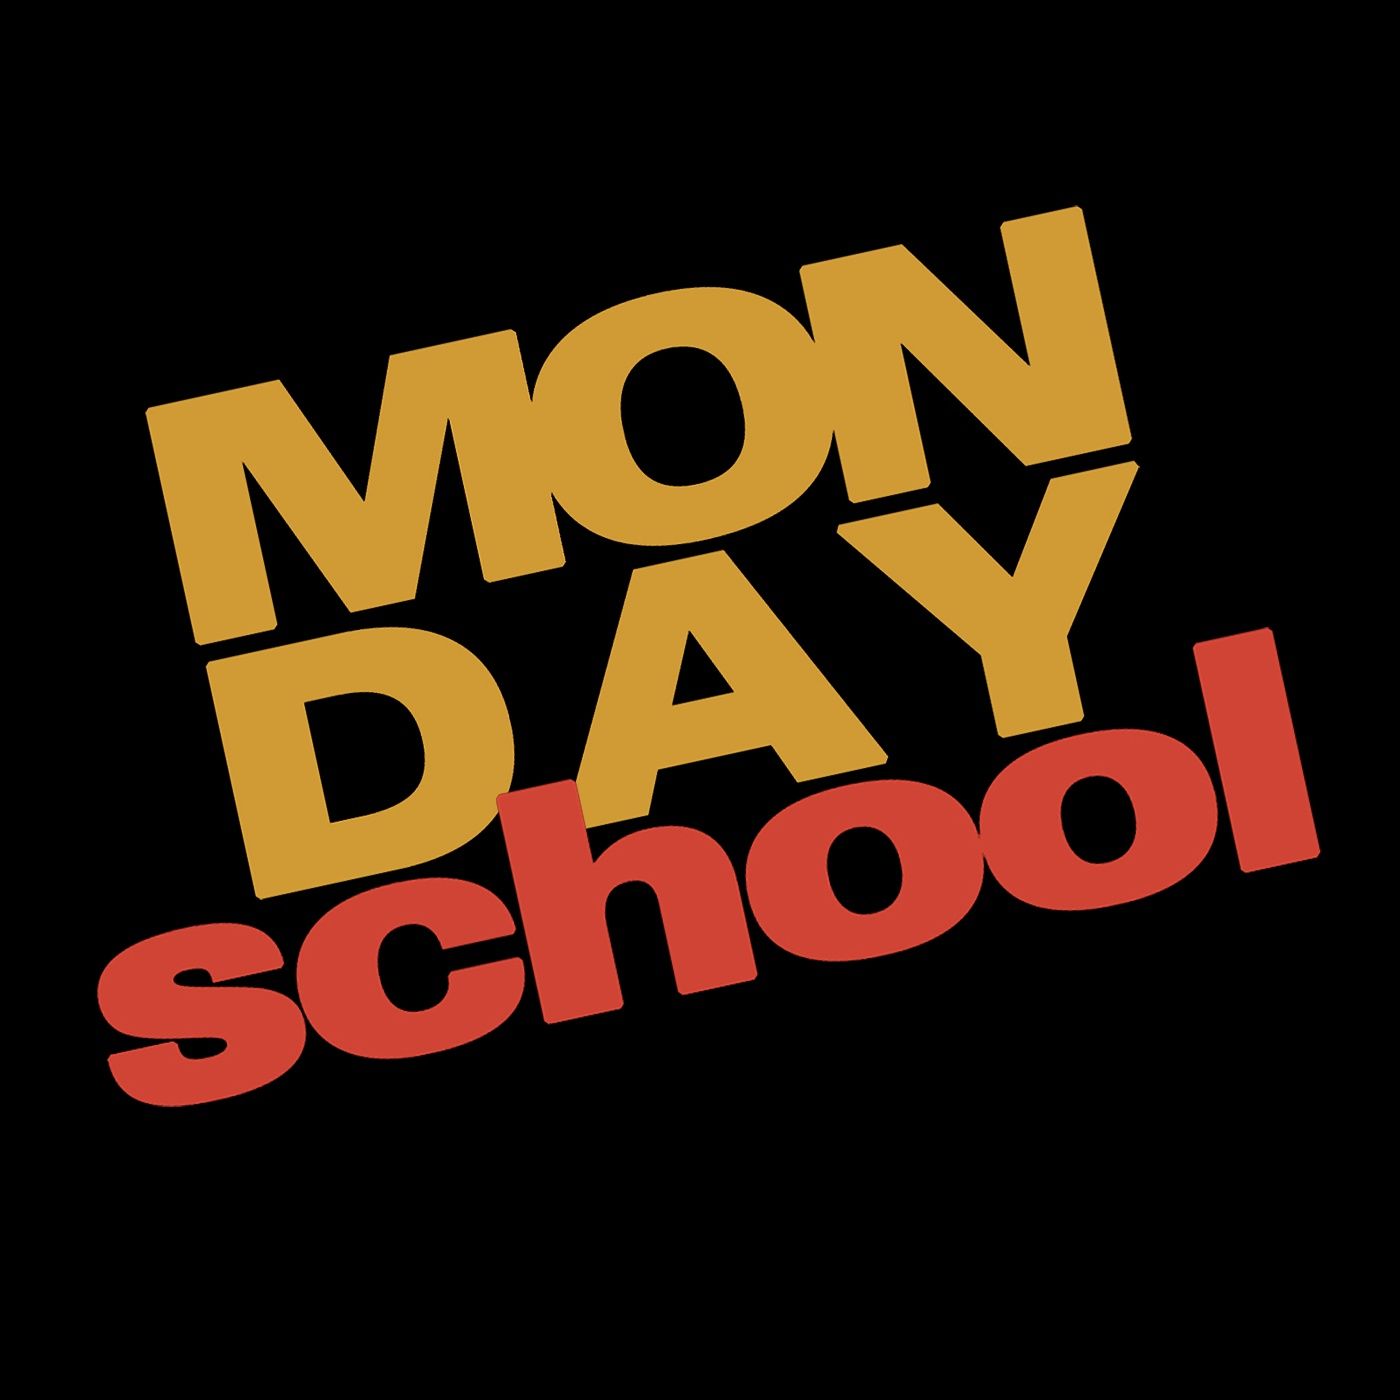 Monday School: A Brief Intro